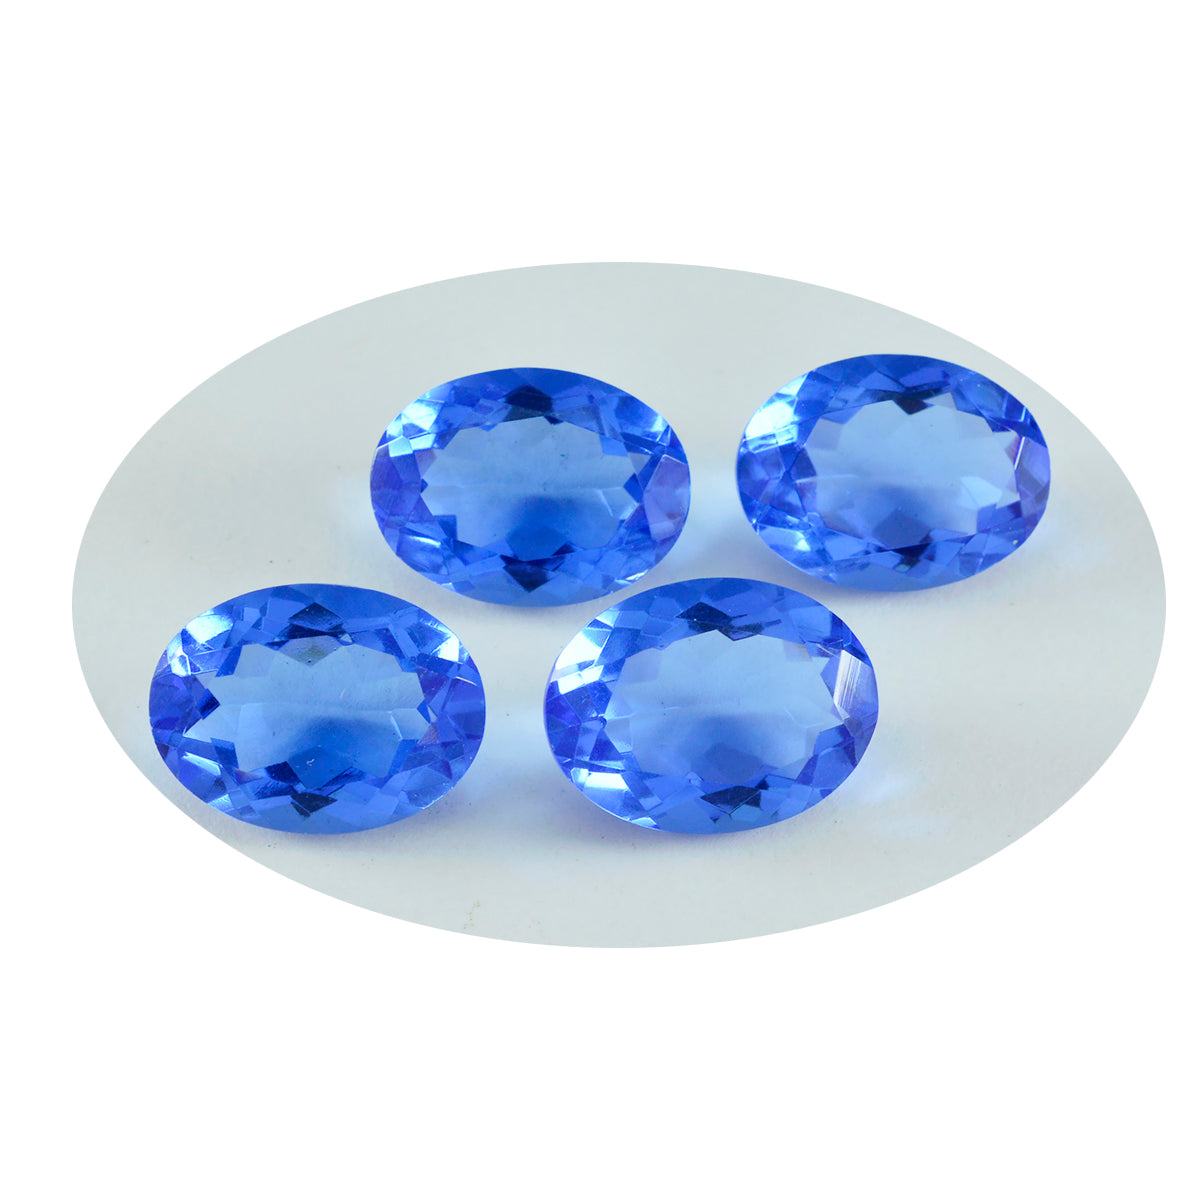 Riyogems 1PC Blauwe Saffier CZ Facet 10x14 mm Ovale Vorm aantrekkelijke Kwaliteit Losse Edelstenen